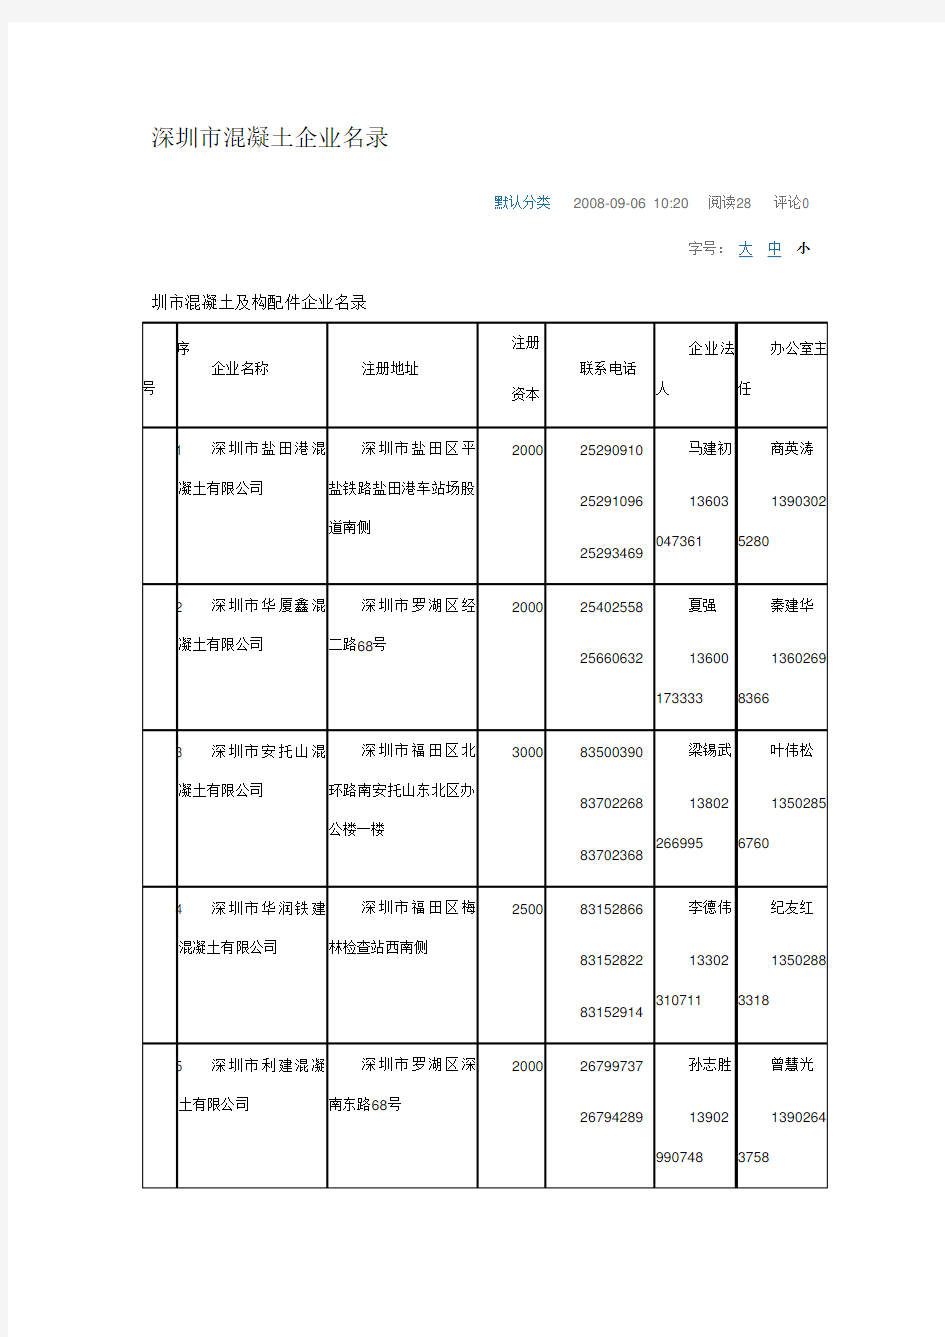 深圳市混凝土企业名录